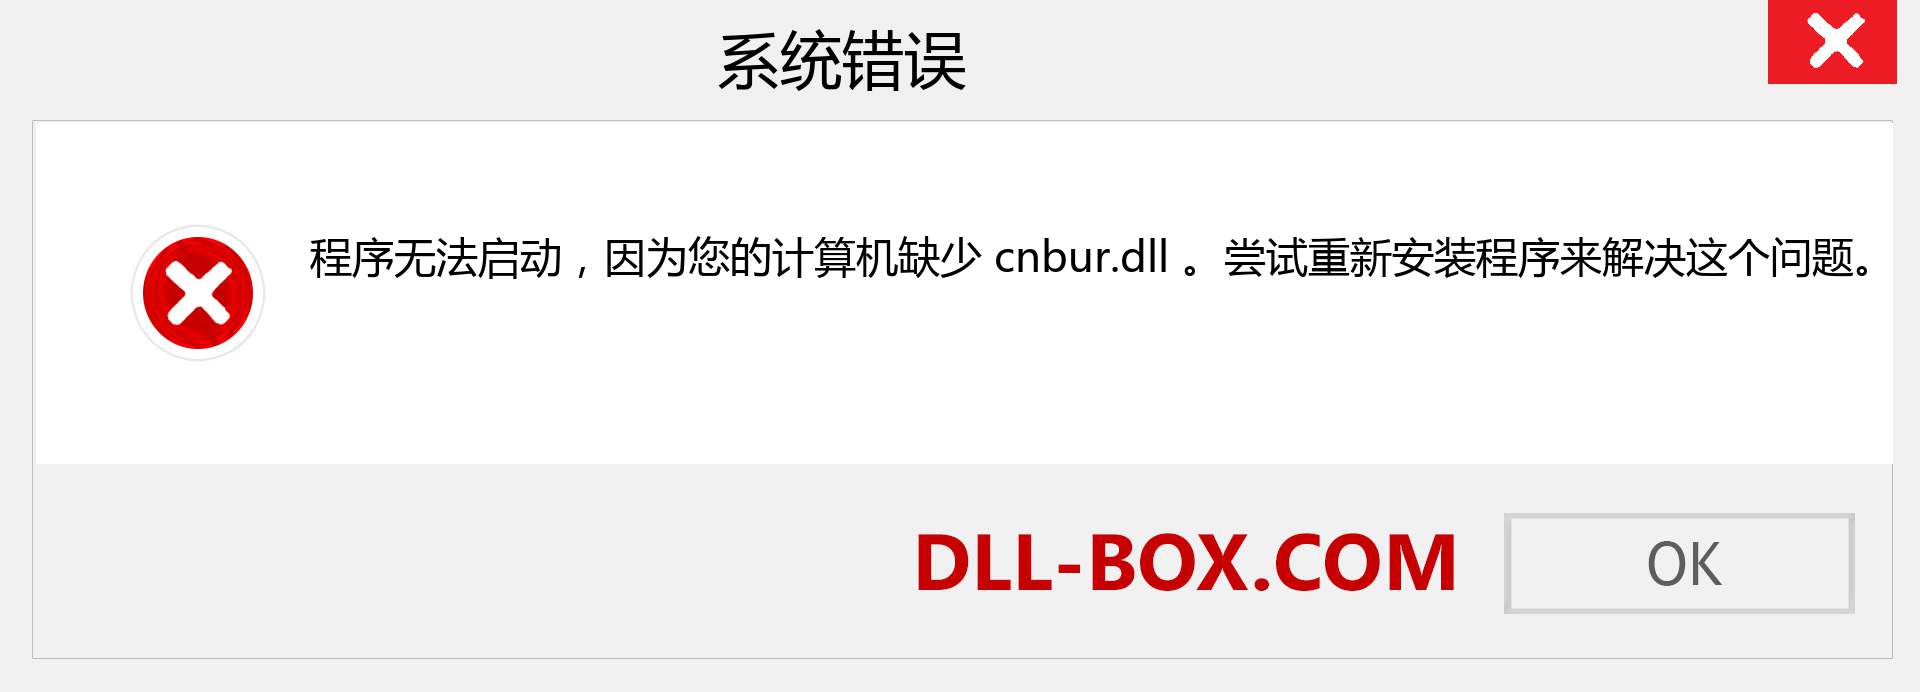 cnbur.dll 文件丢失？。 适用于 Windows 7、8、10 的下载 - 修复 Windows、照片、图像上的 cnbur dll 丢失错误